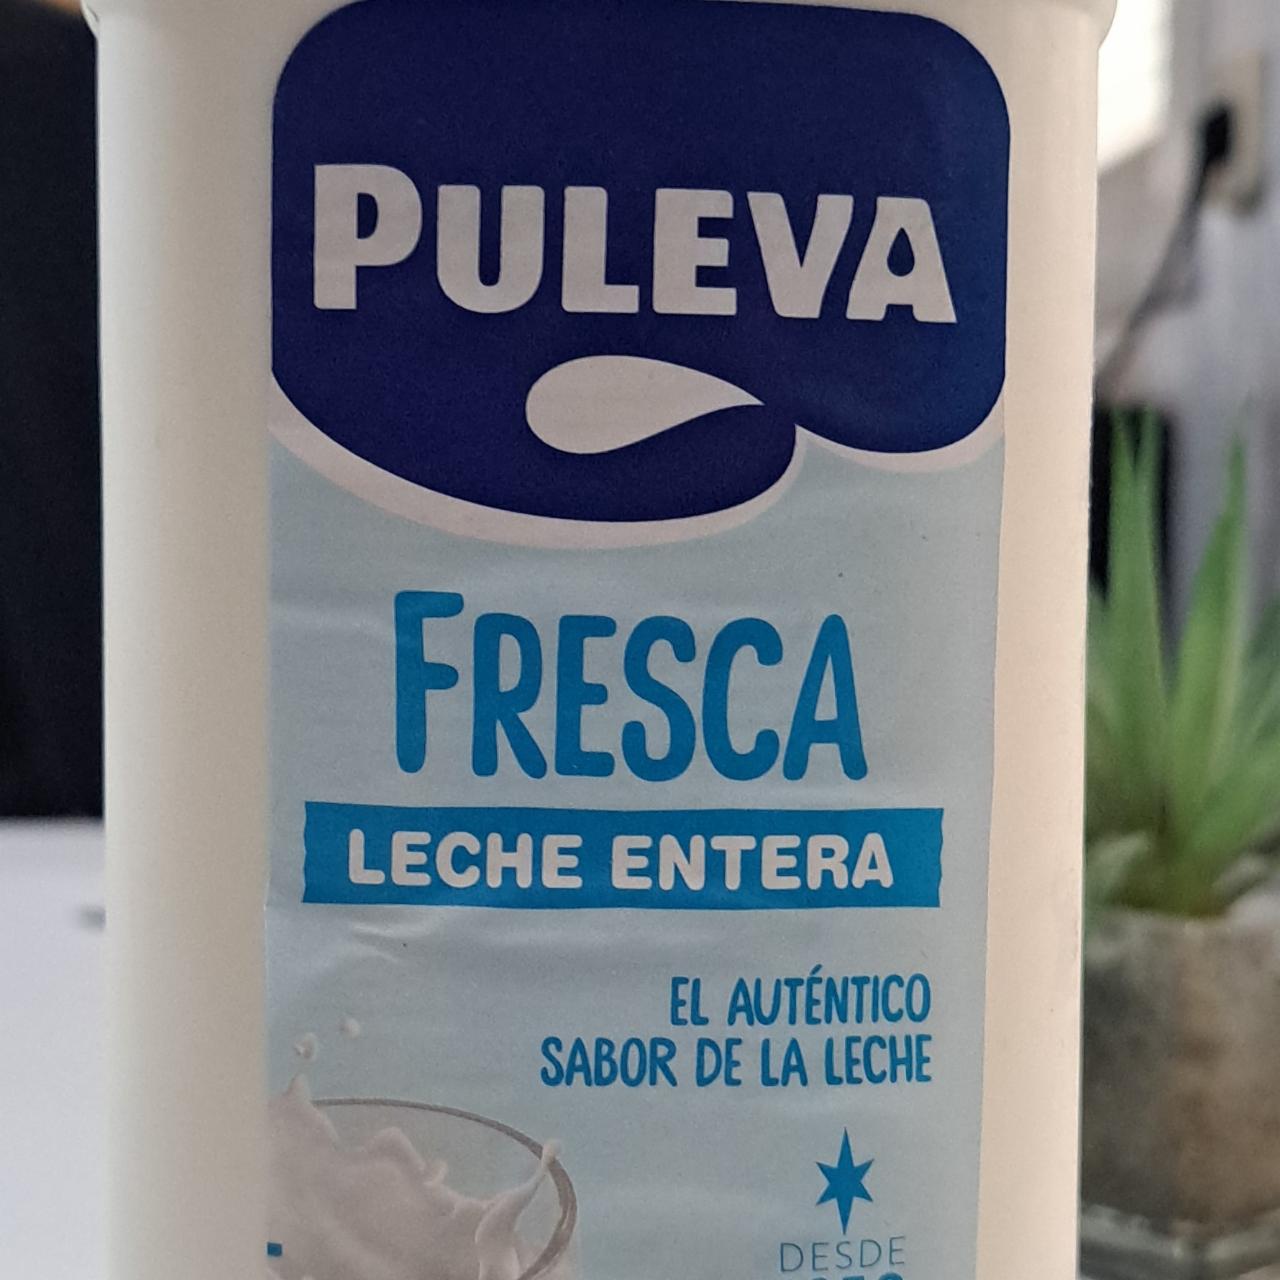 Fotografie - Fresca leche entera Puleva